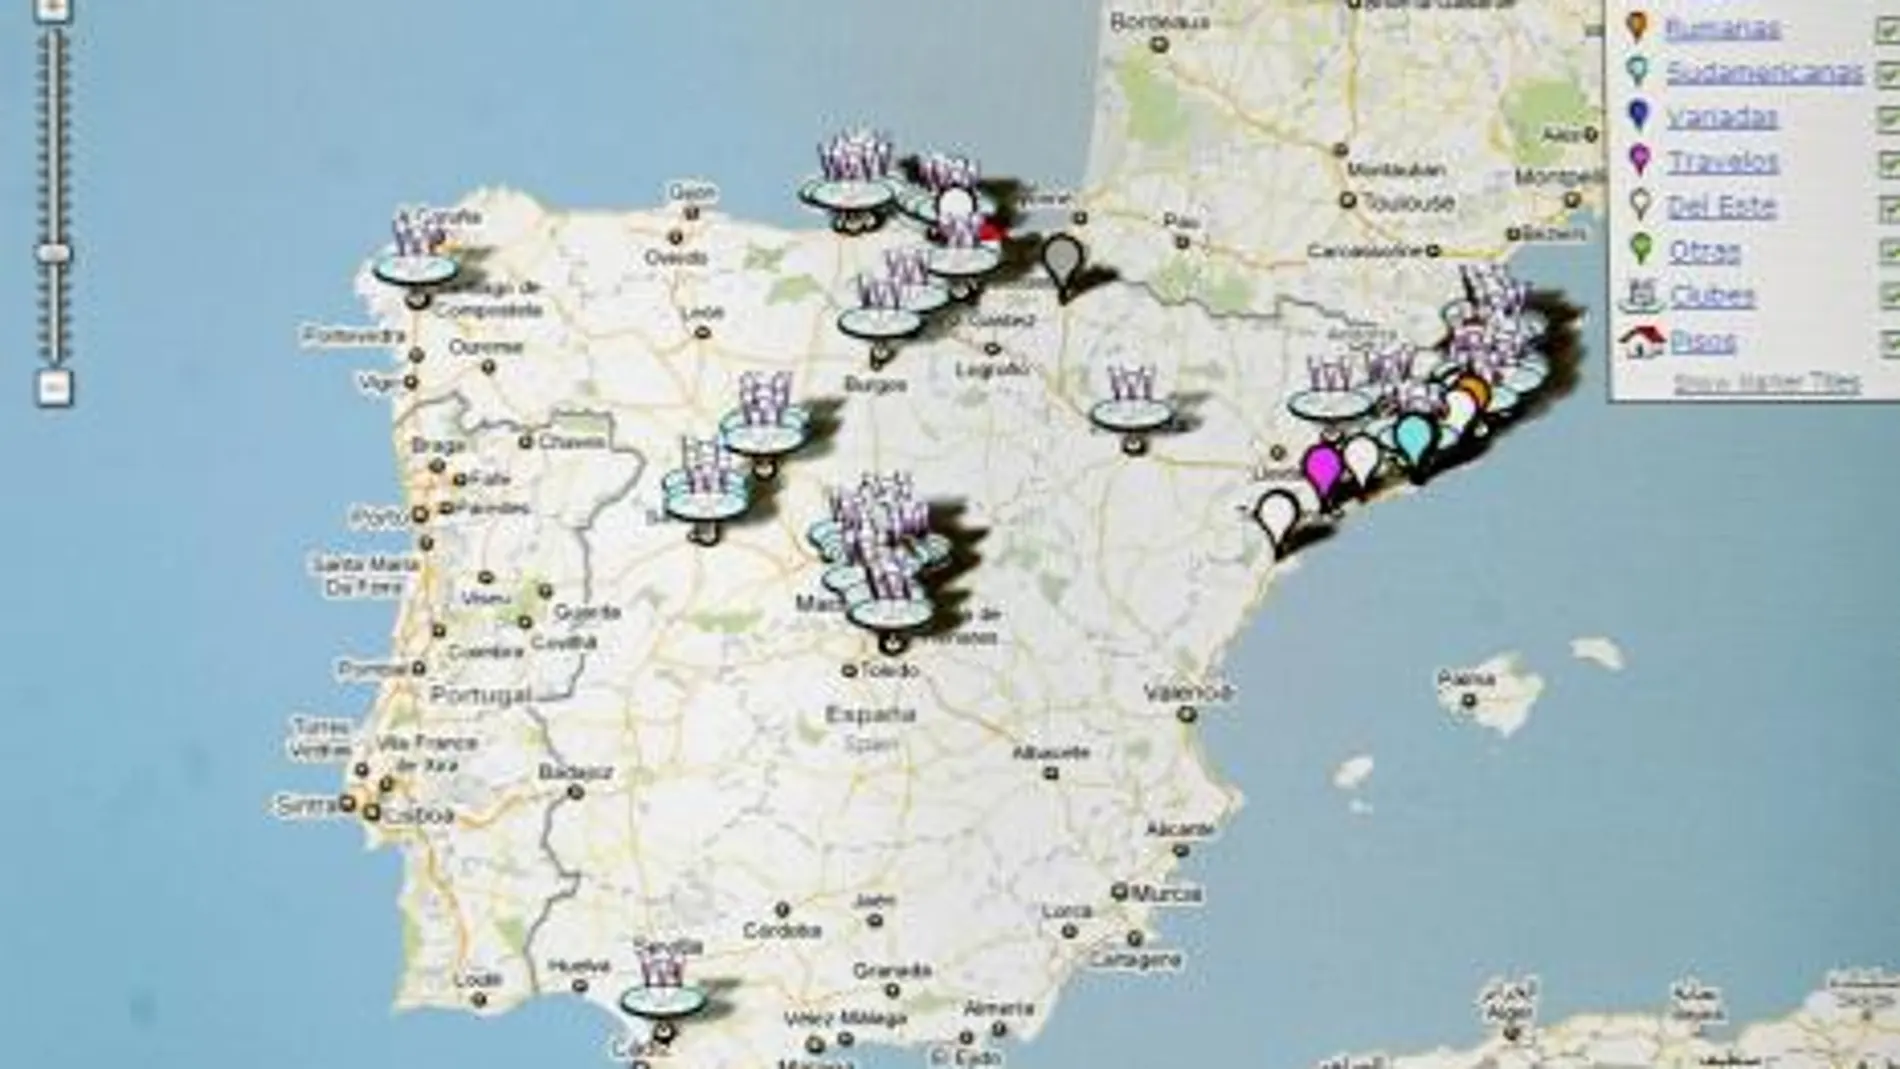 Imagen de la web que ofrece la ubicación de las prostitutas en un mapa de España y que el Ministerio de Igualdad quiere cerrar